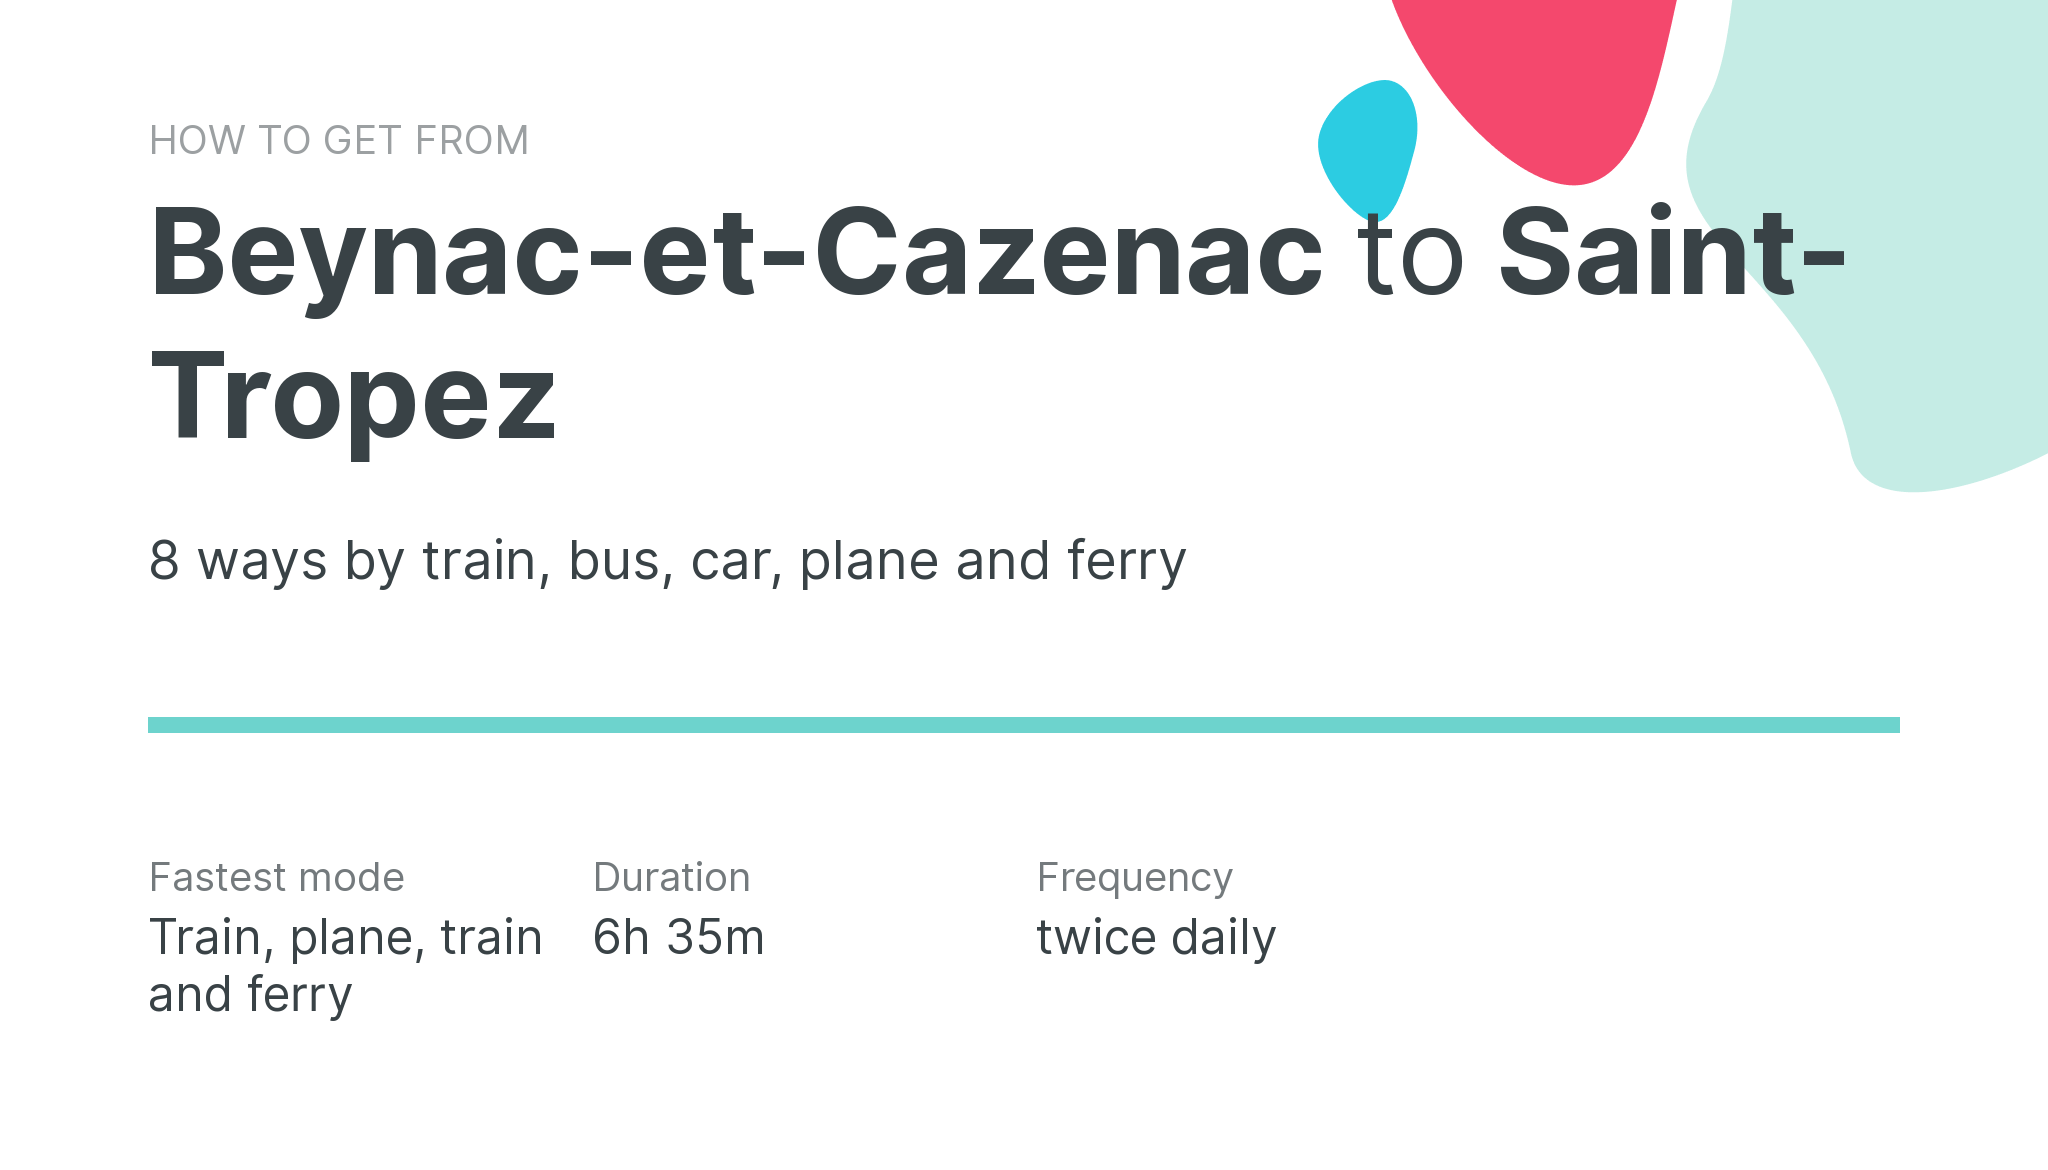 How do I get from Beynac-et-Cazenac to Saint-Tropez